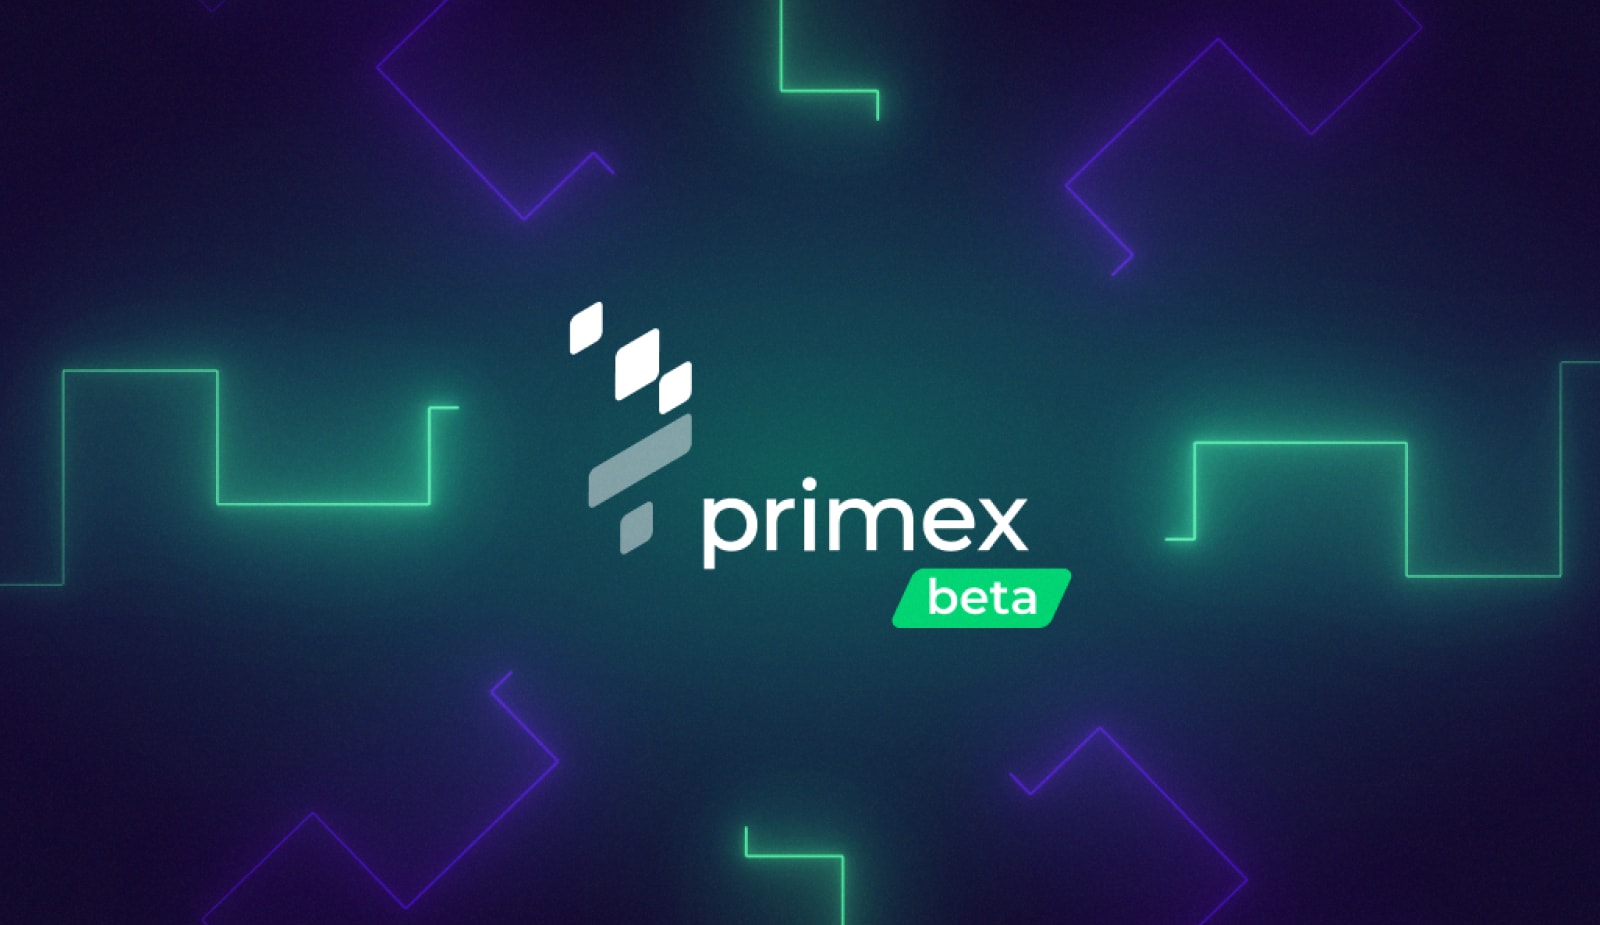 Primex Finance запустил бета-версию и представил новые инструменты. Заглавный коллаж новости.